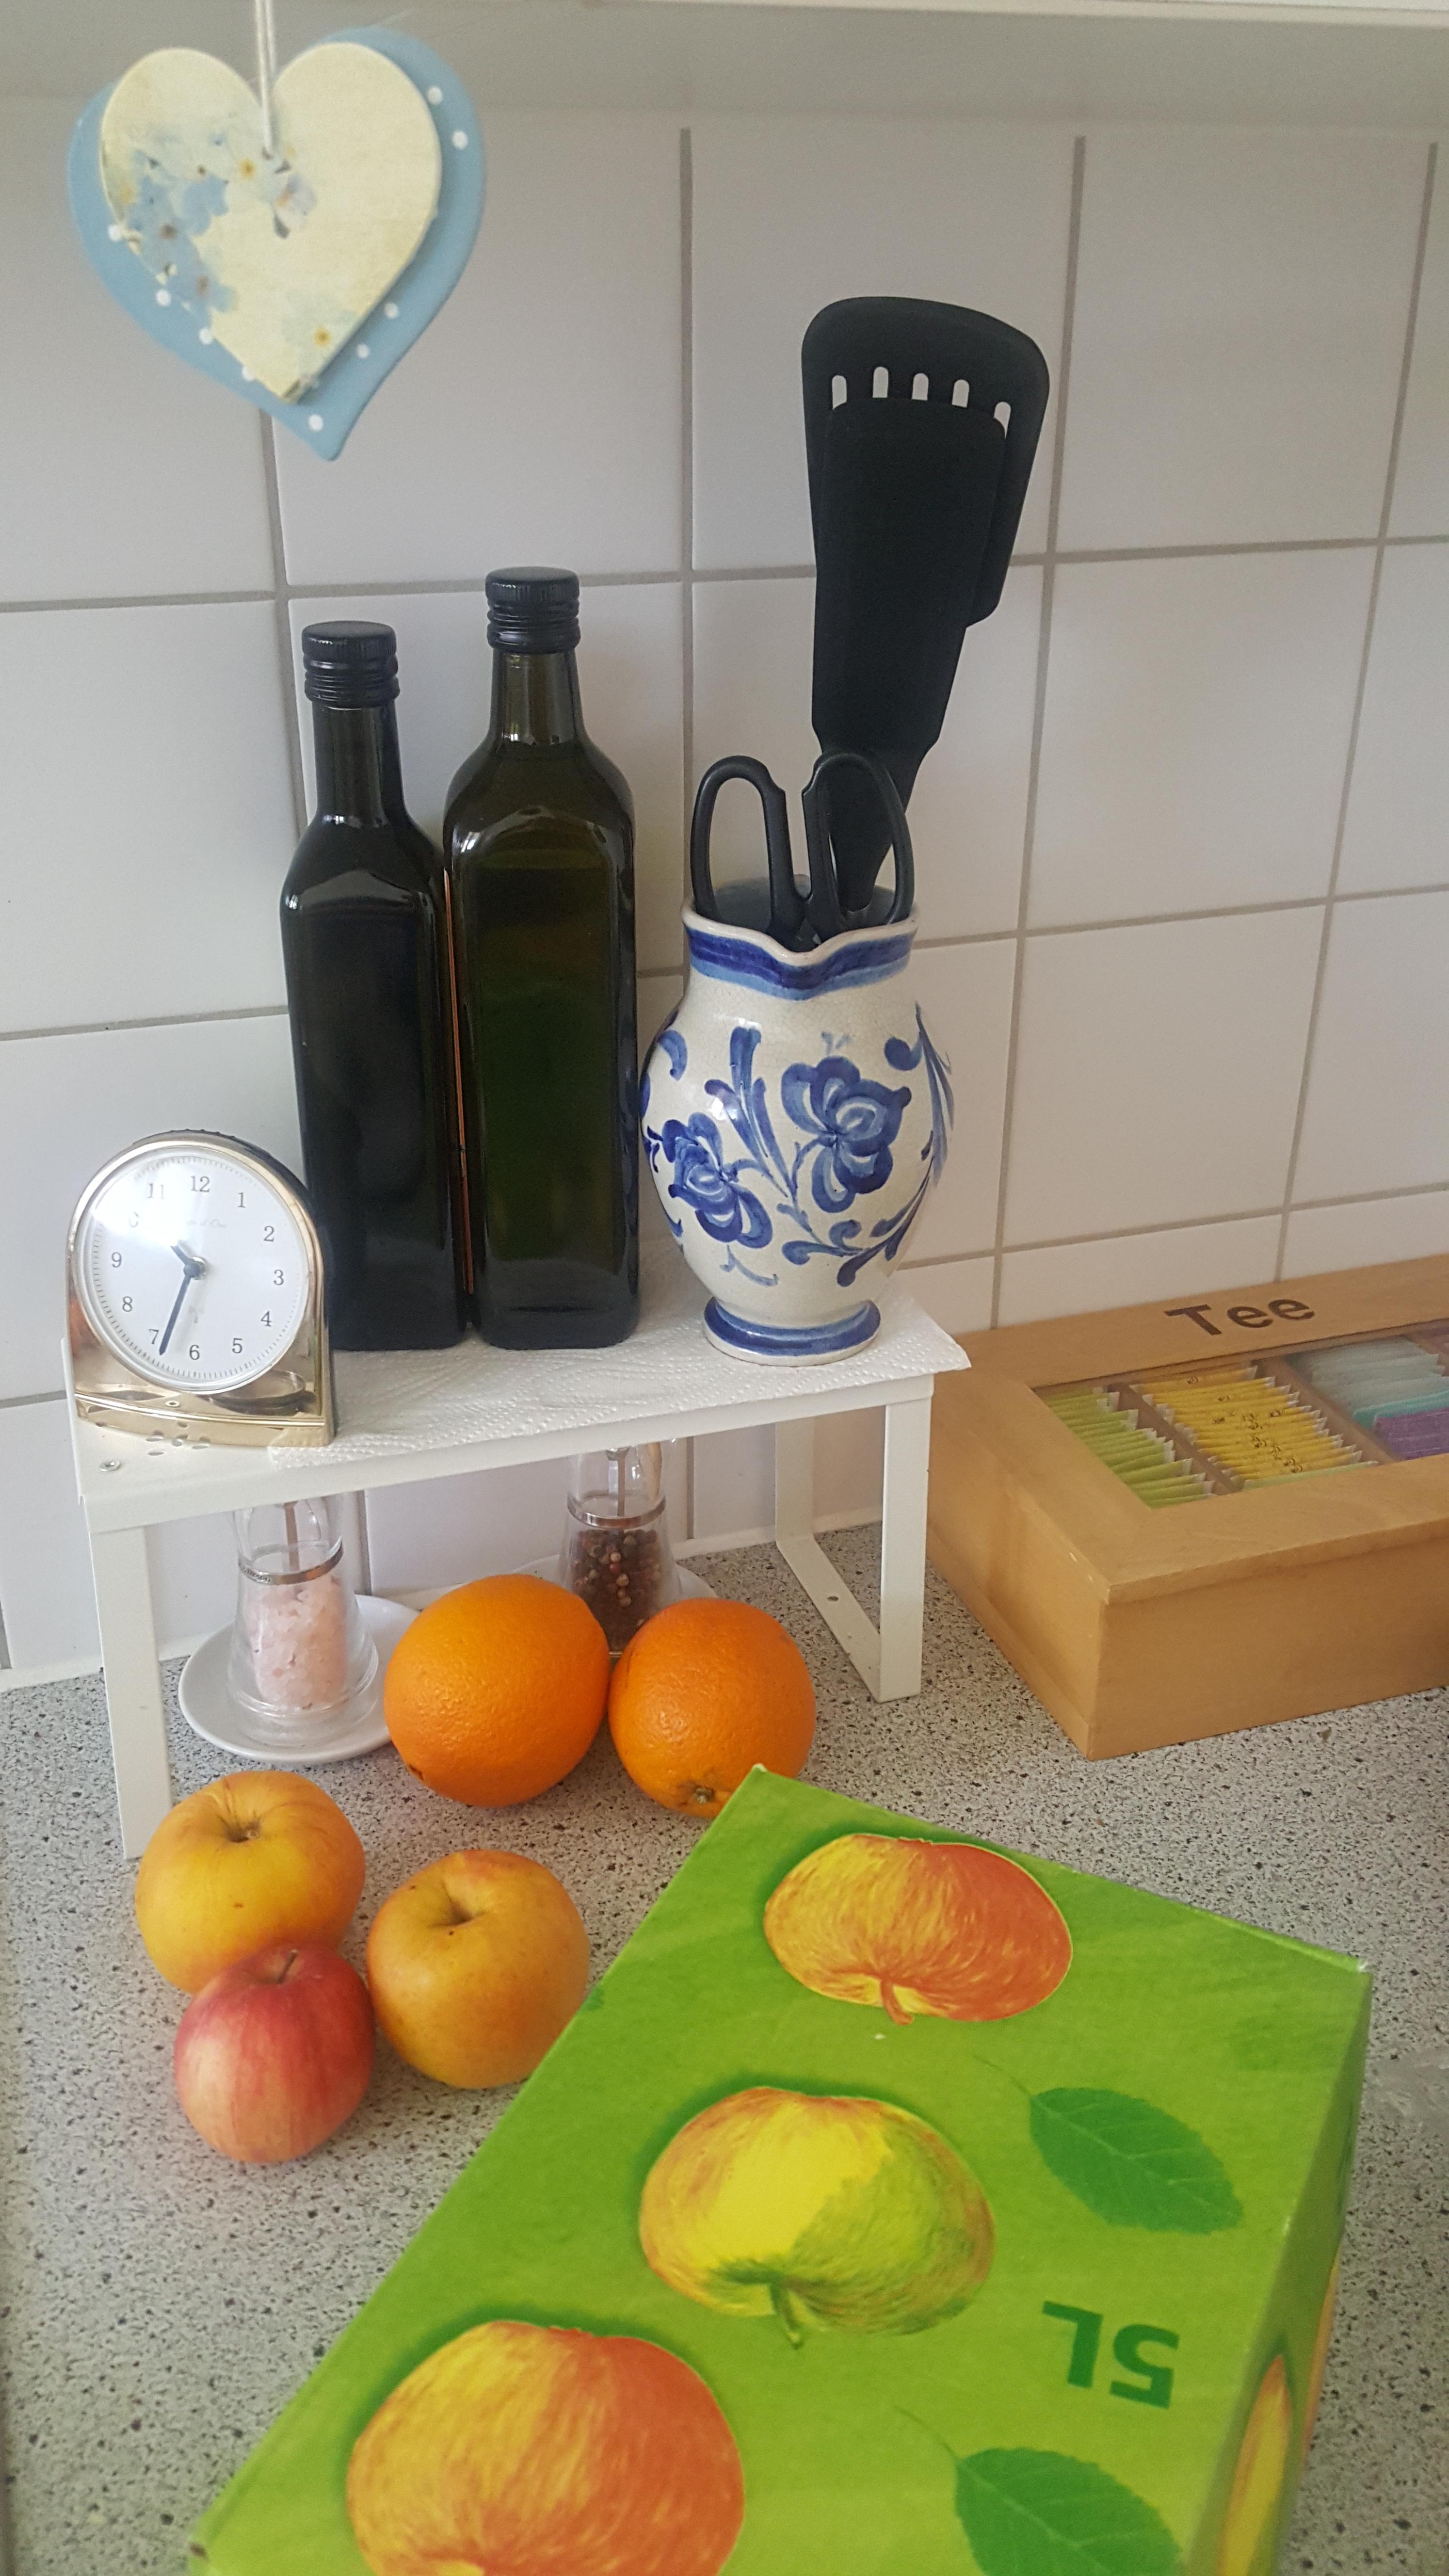 #livingchallenge #küchendeko
Selbstgeerntete Äpfel und selbstgemachter Apfelsaft #dankemama 🤗